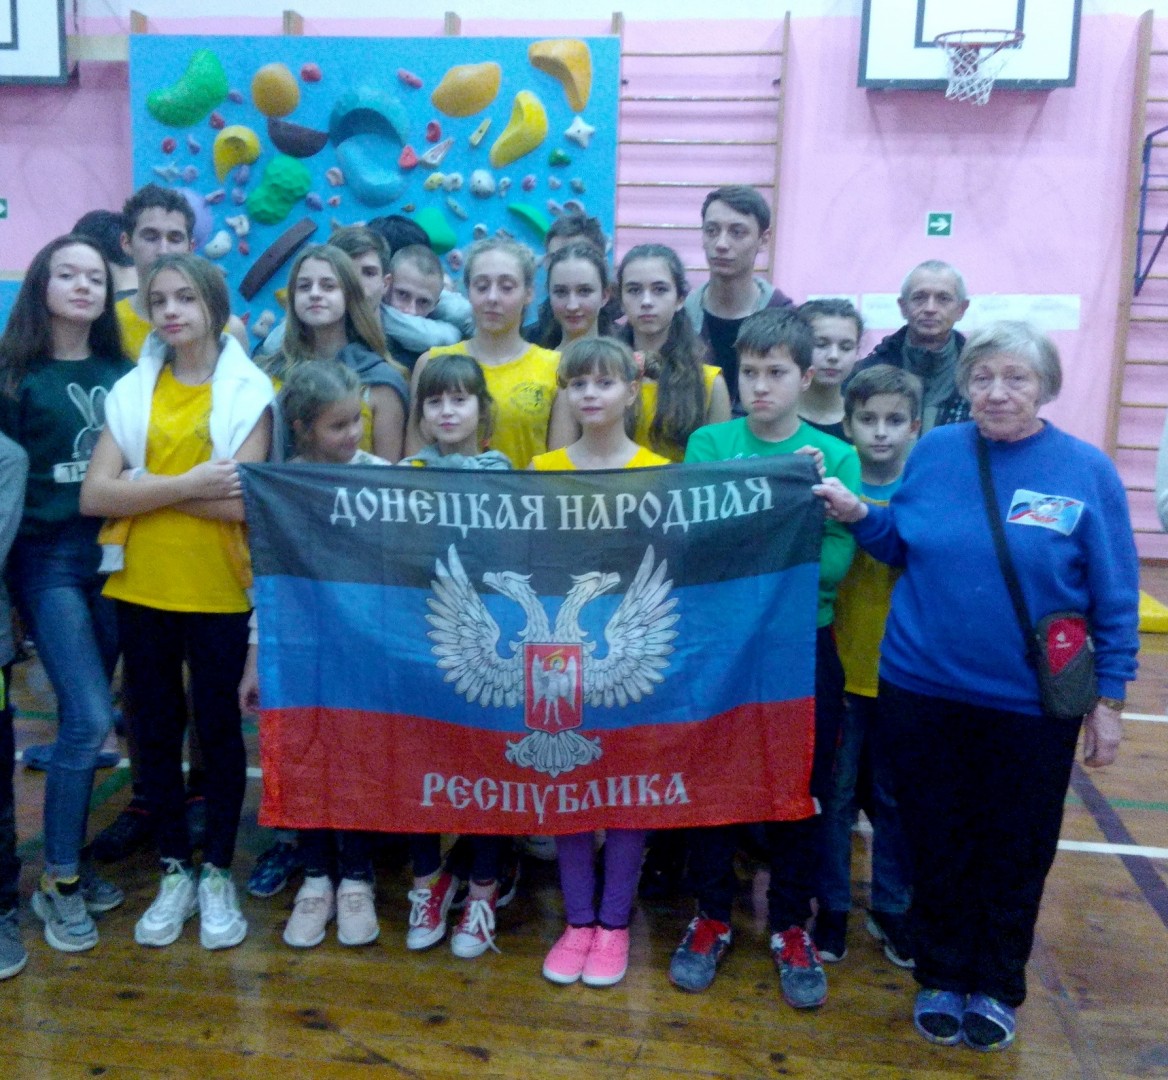 Соревнования по боулдерингу в Ростове-на-Дону принесли 2 медали команде ДНР